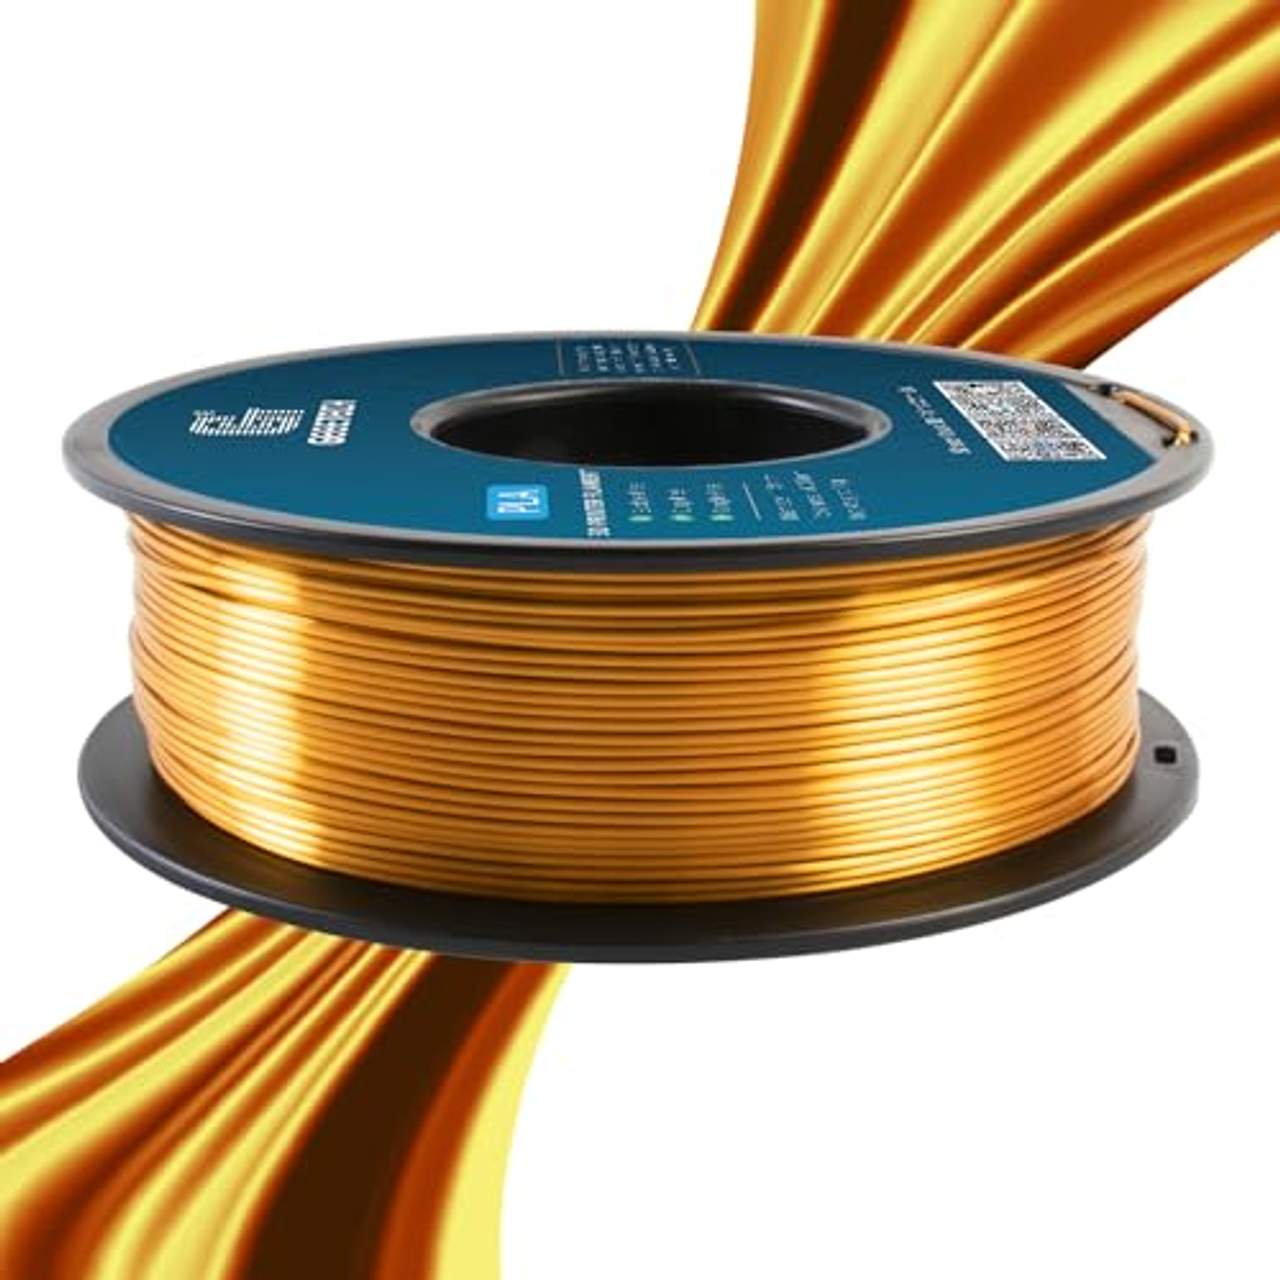 GEEETECH PLA filament 1.75mm Silk Gold